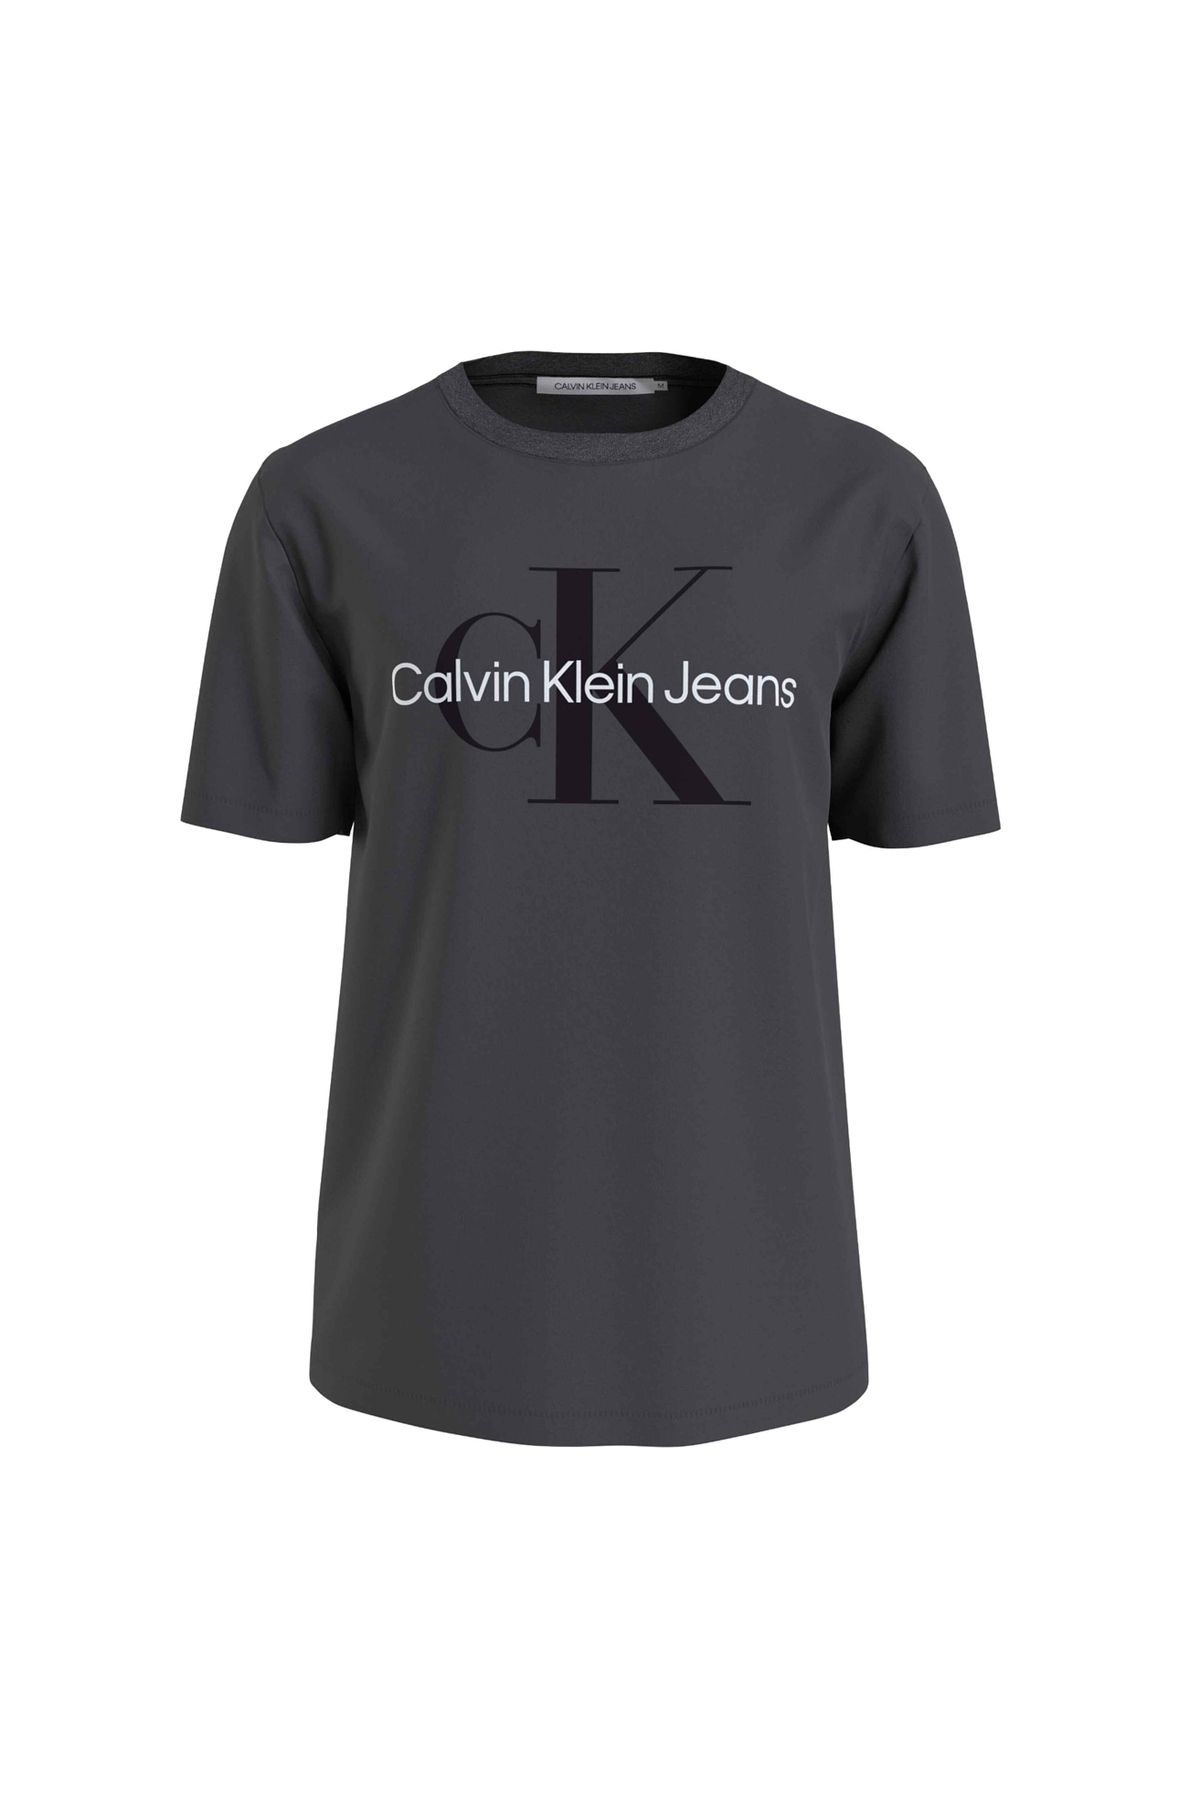 Calvin Klein Jeans Baskılı Koyu Gri Erkek T-Shirt